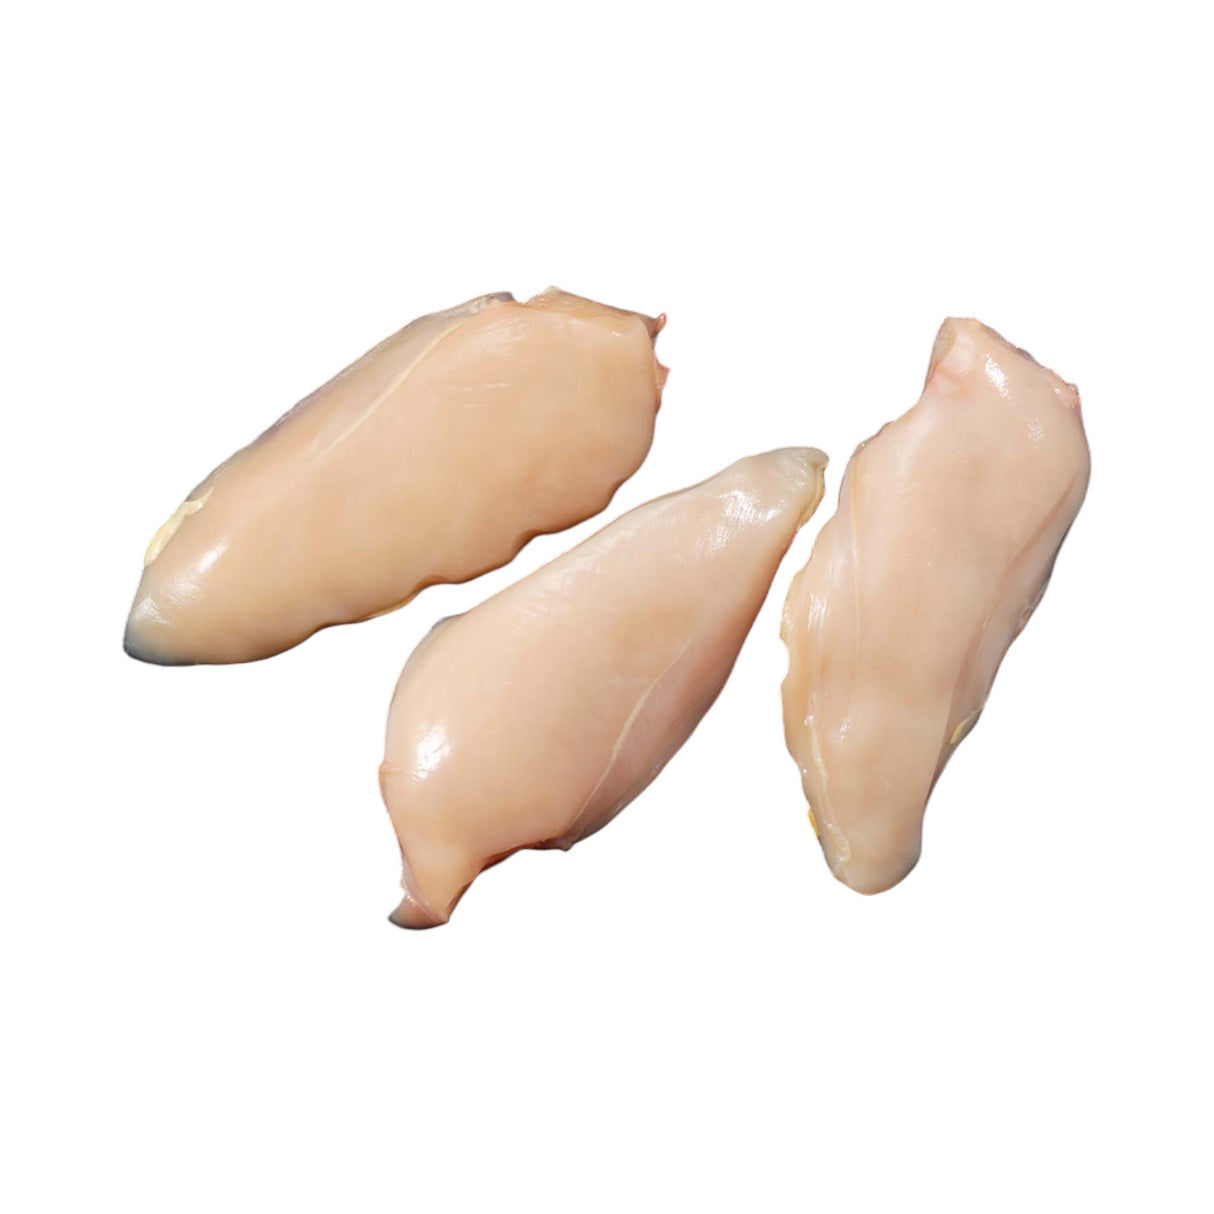 Adlington - English Label - Free Range Chicken Breast Fillets (2 Fillets)